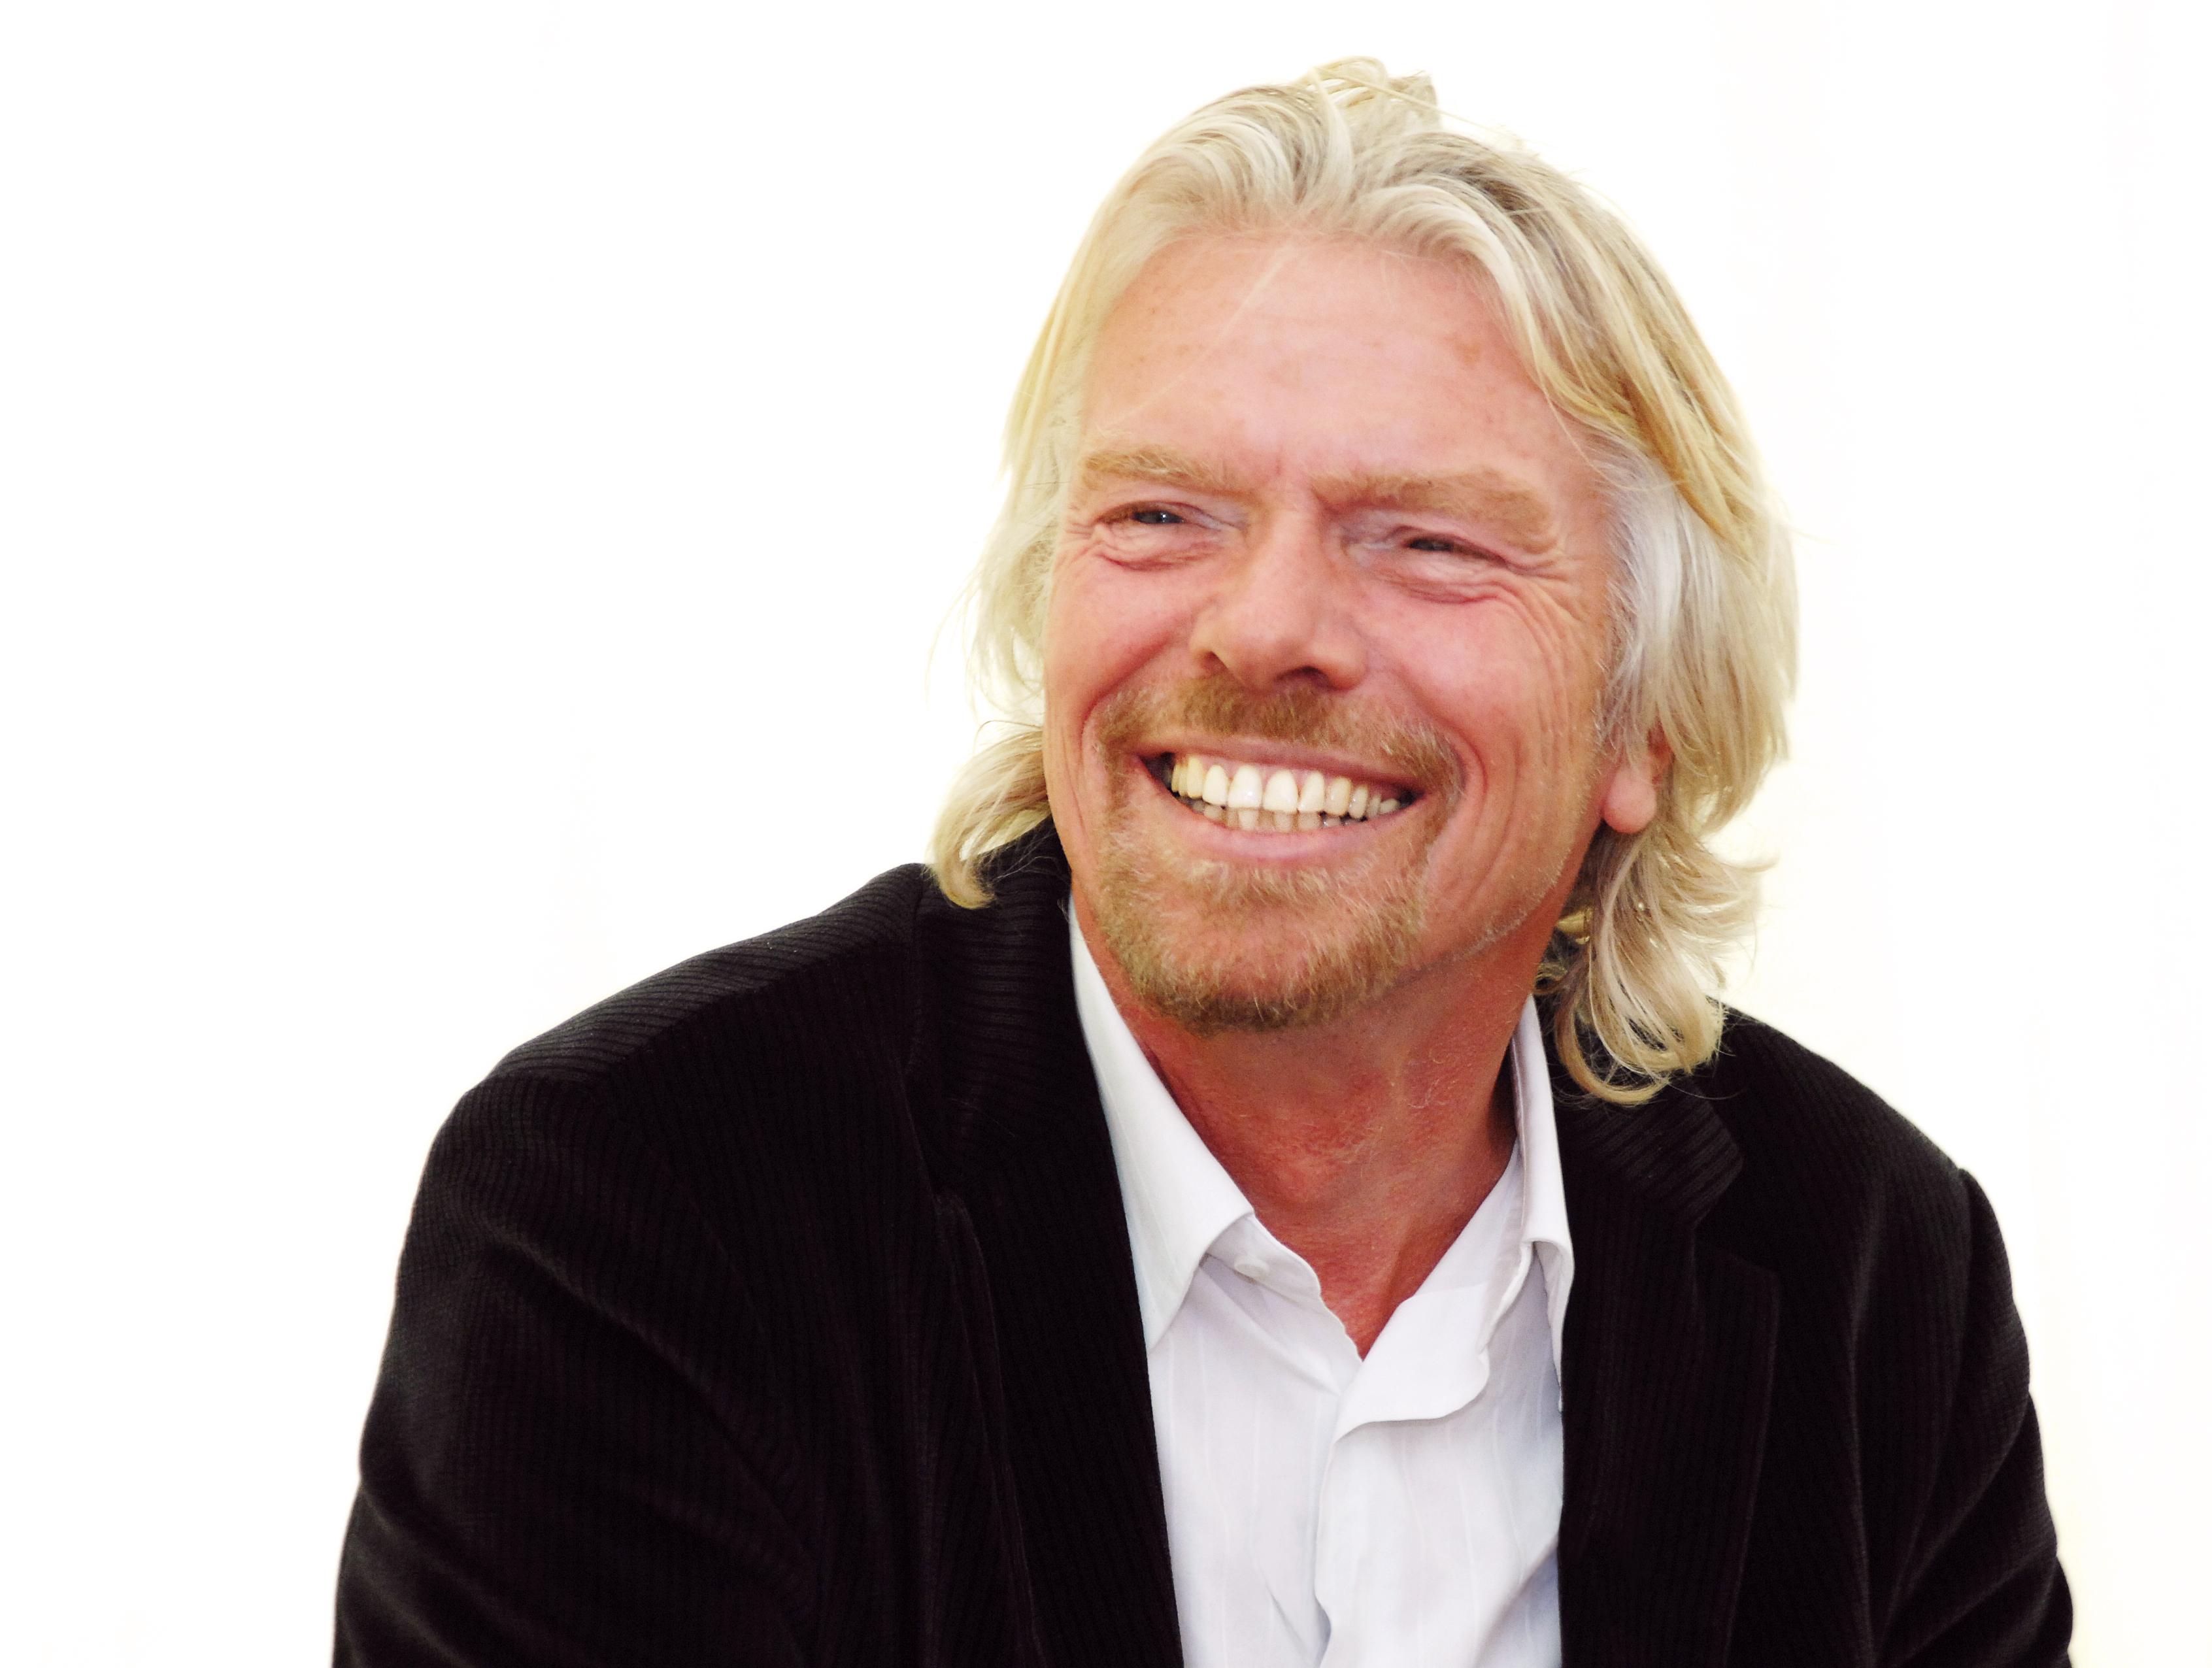 Een lachende man met blond haar in een zwart pak en wit overhemd (Richard Branson)